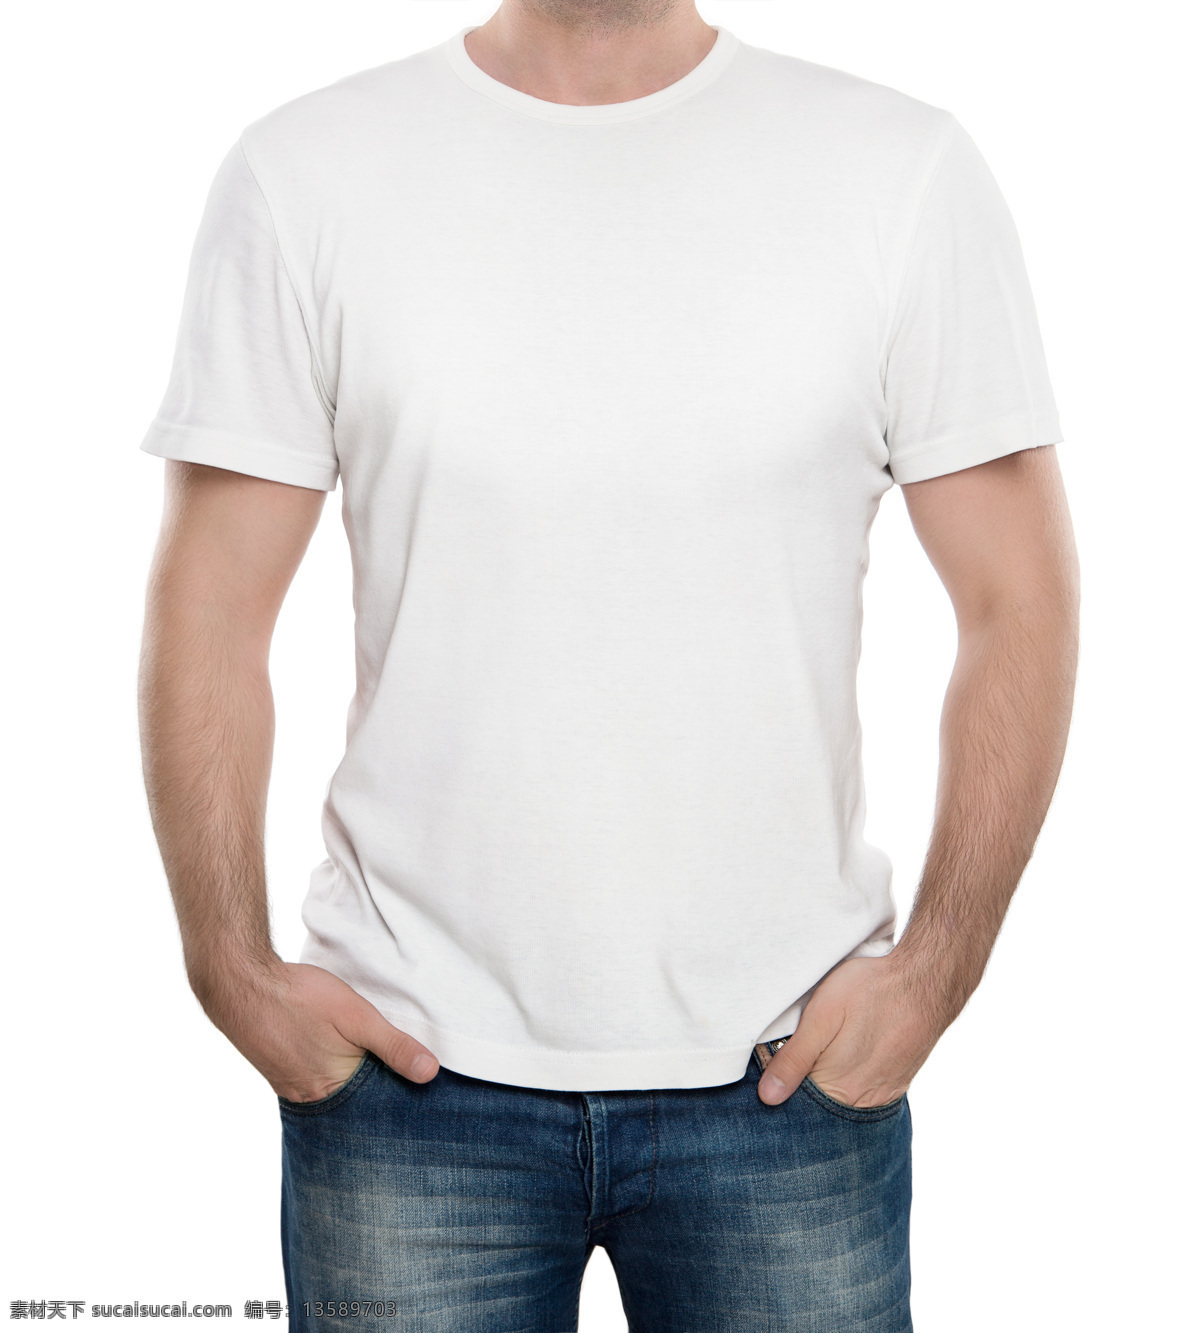 白色 空白 t 恤 男式t恤 短袖 t恤衫 衣服 服装 休闲t恤 空白t恤 珠宝服饰 生活百科